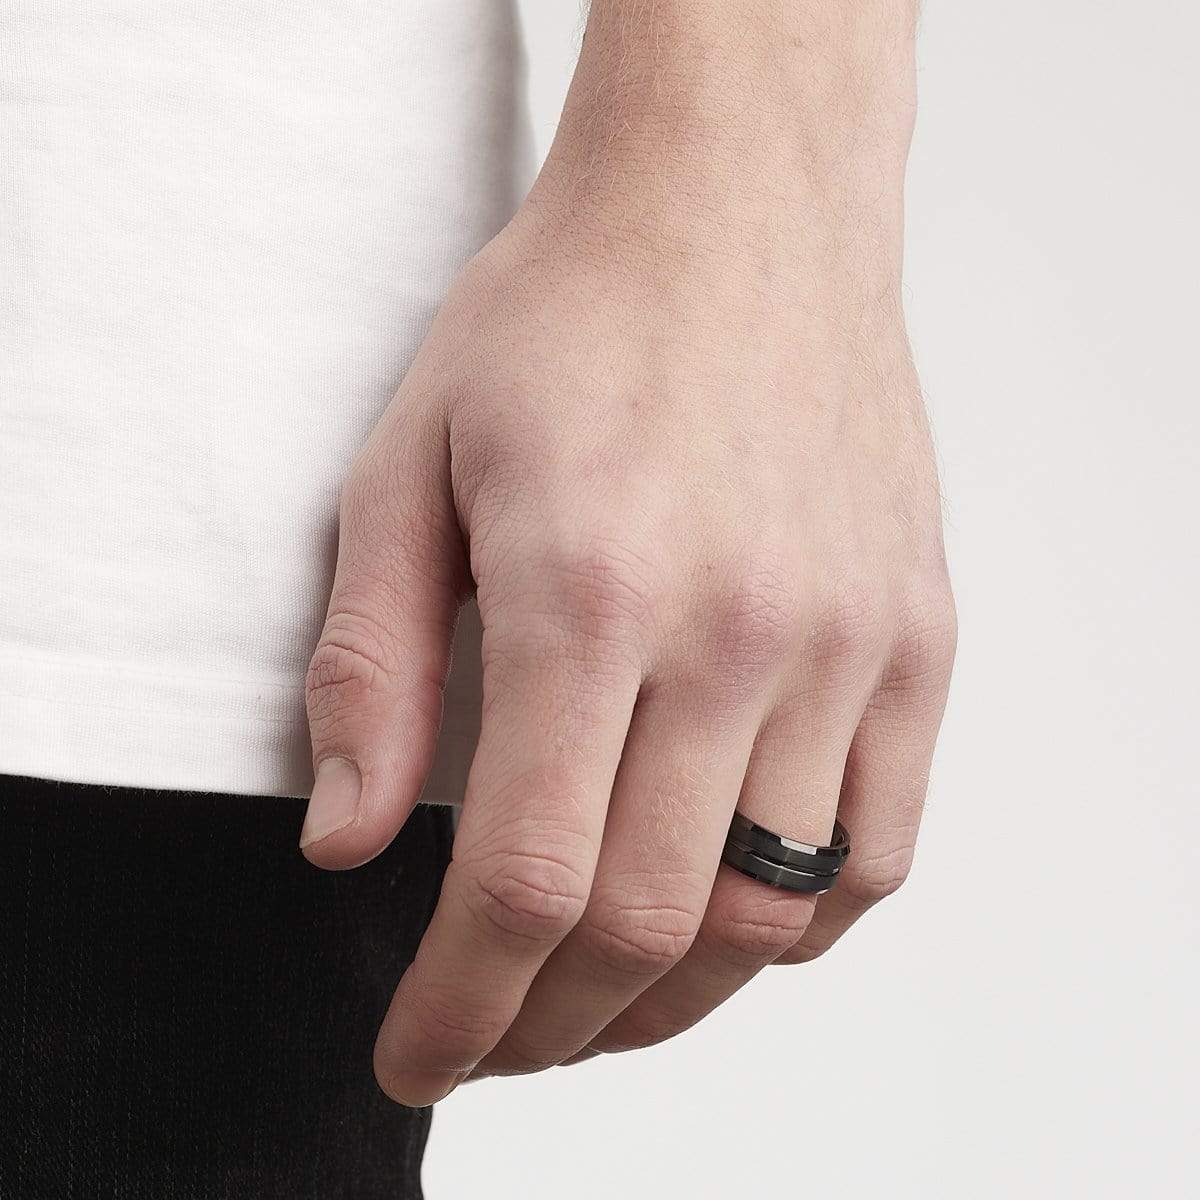 Men's Groove Tungsten Ring